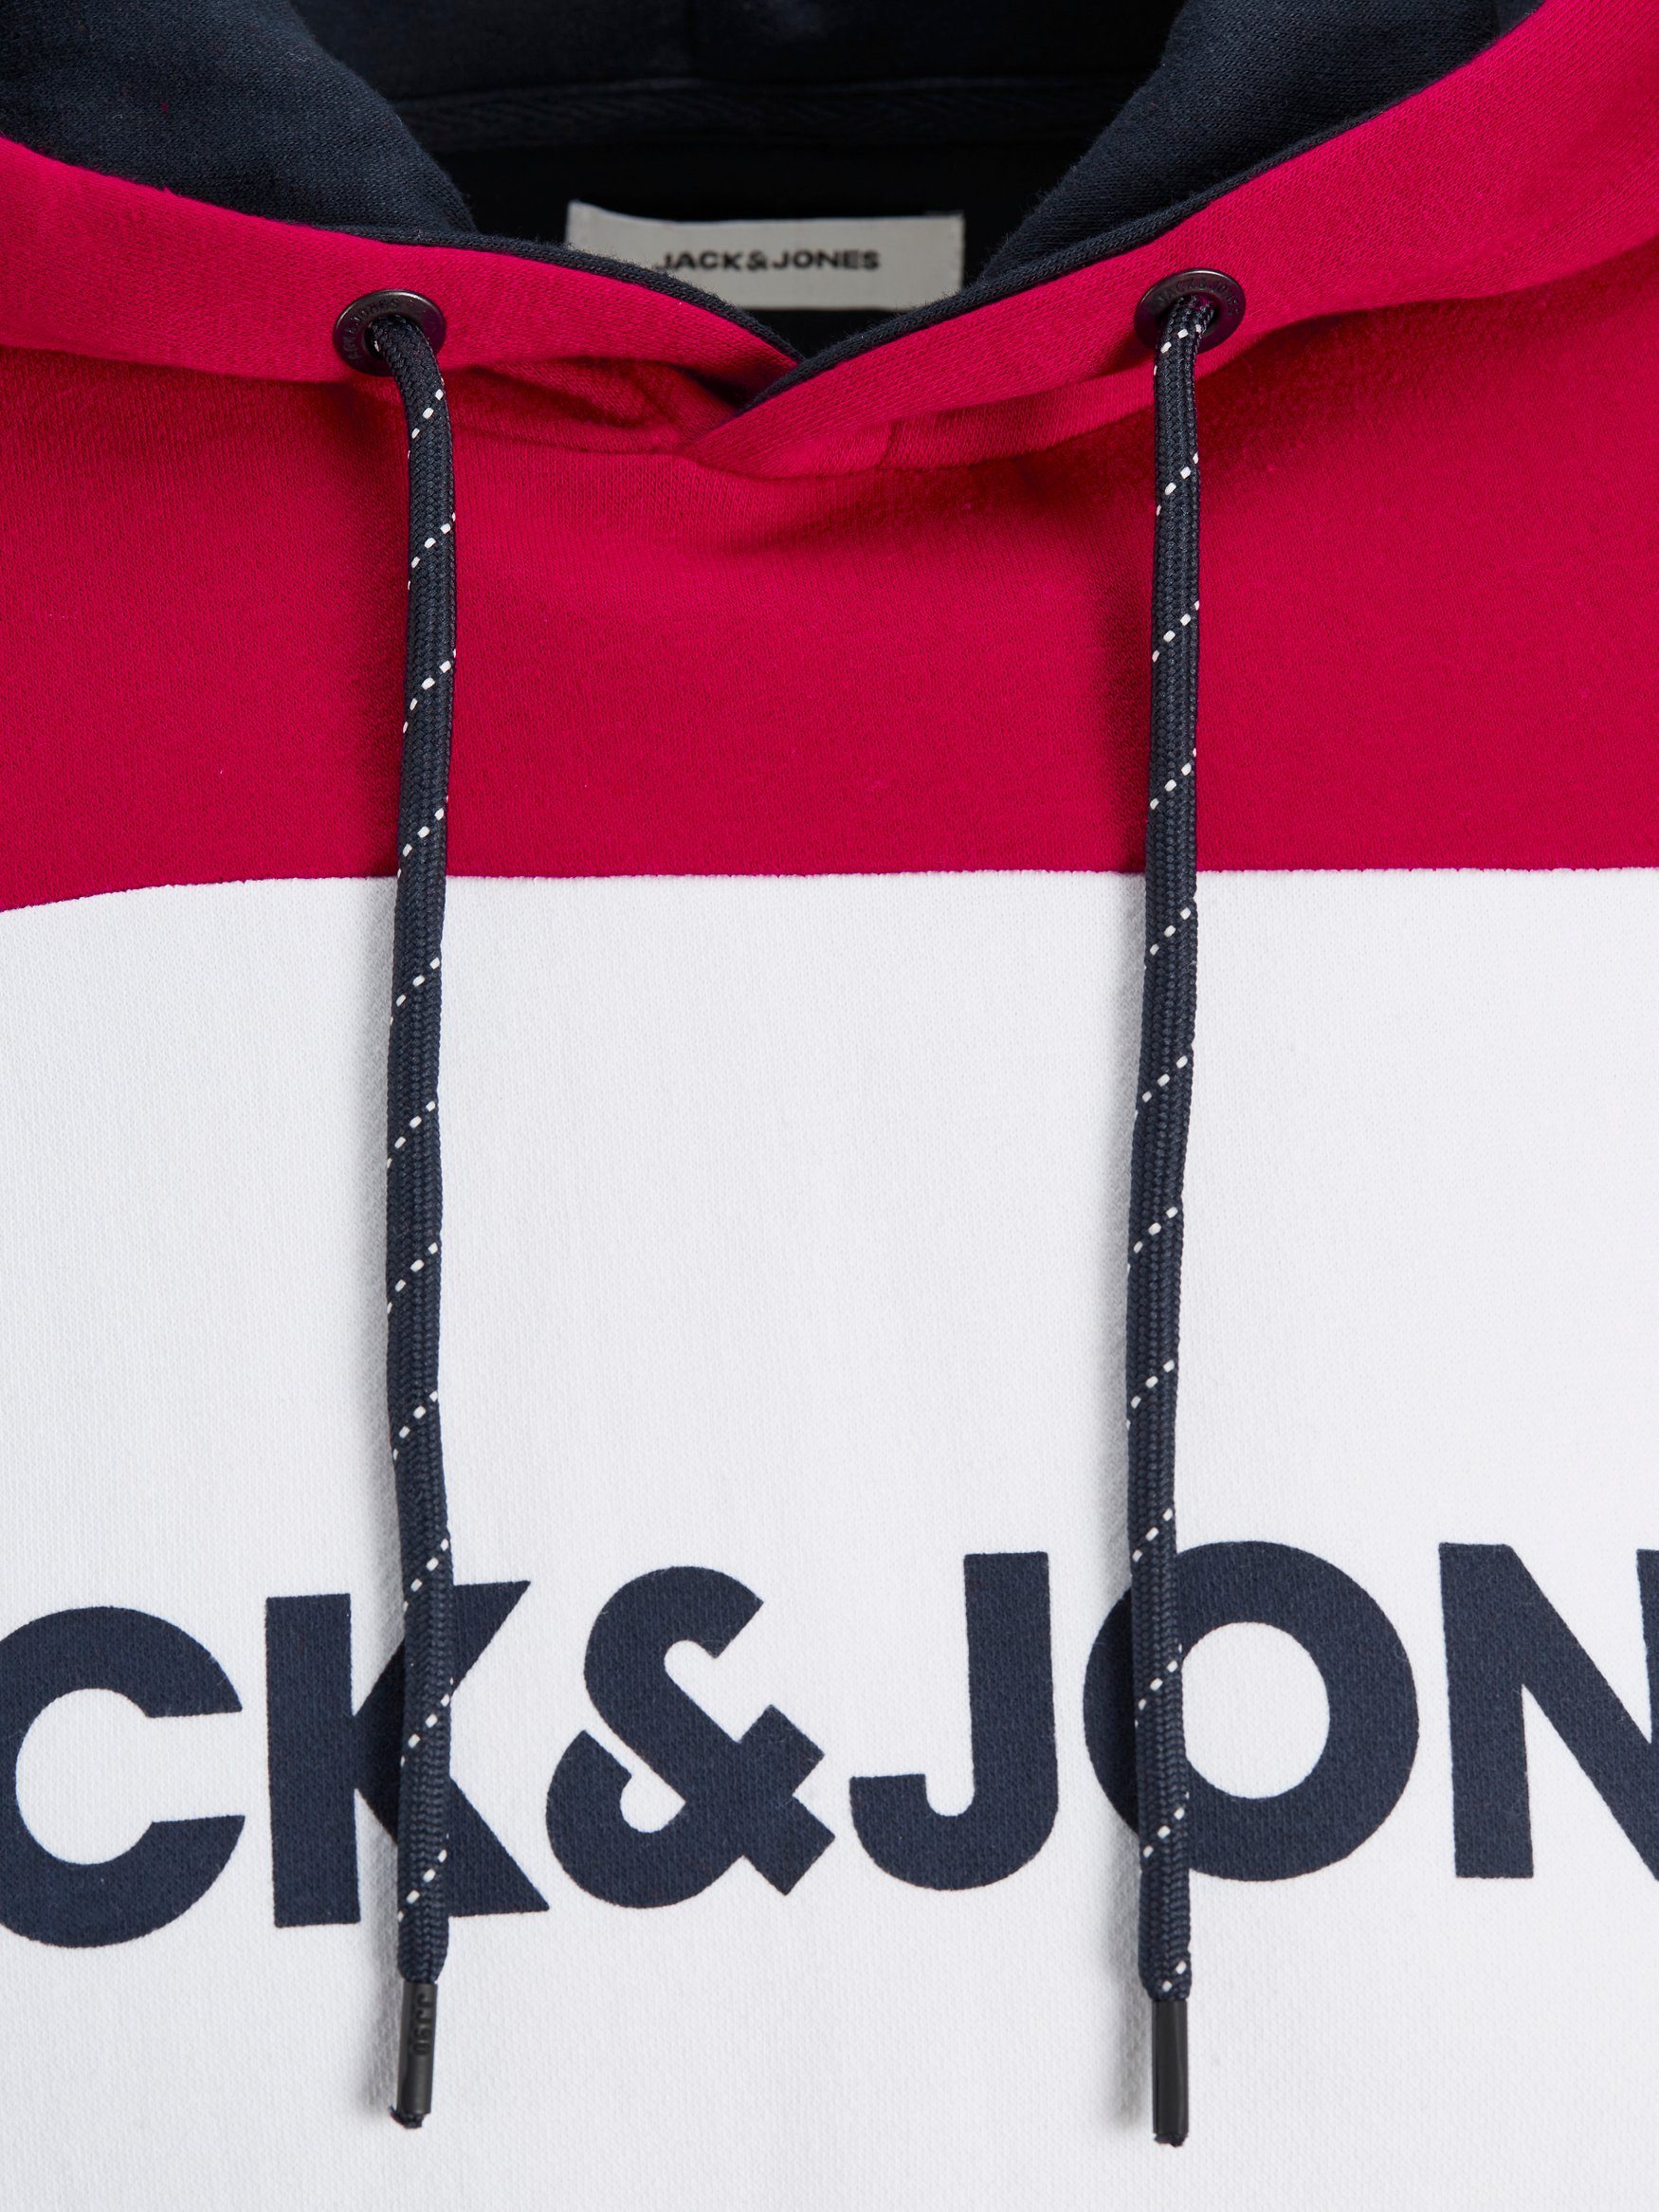 Sweater Jack & Jones Rot JJELOGO Logo Pullover Warmer Hoodie Hoodie in 4416 Print